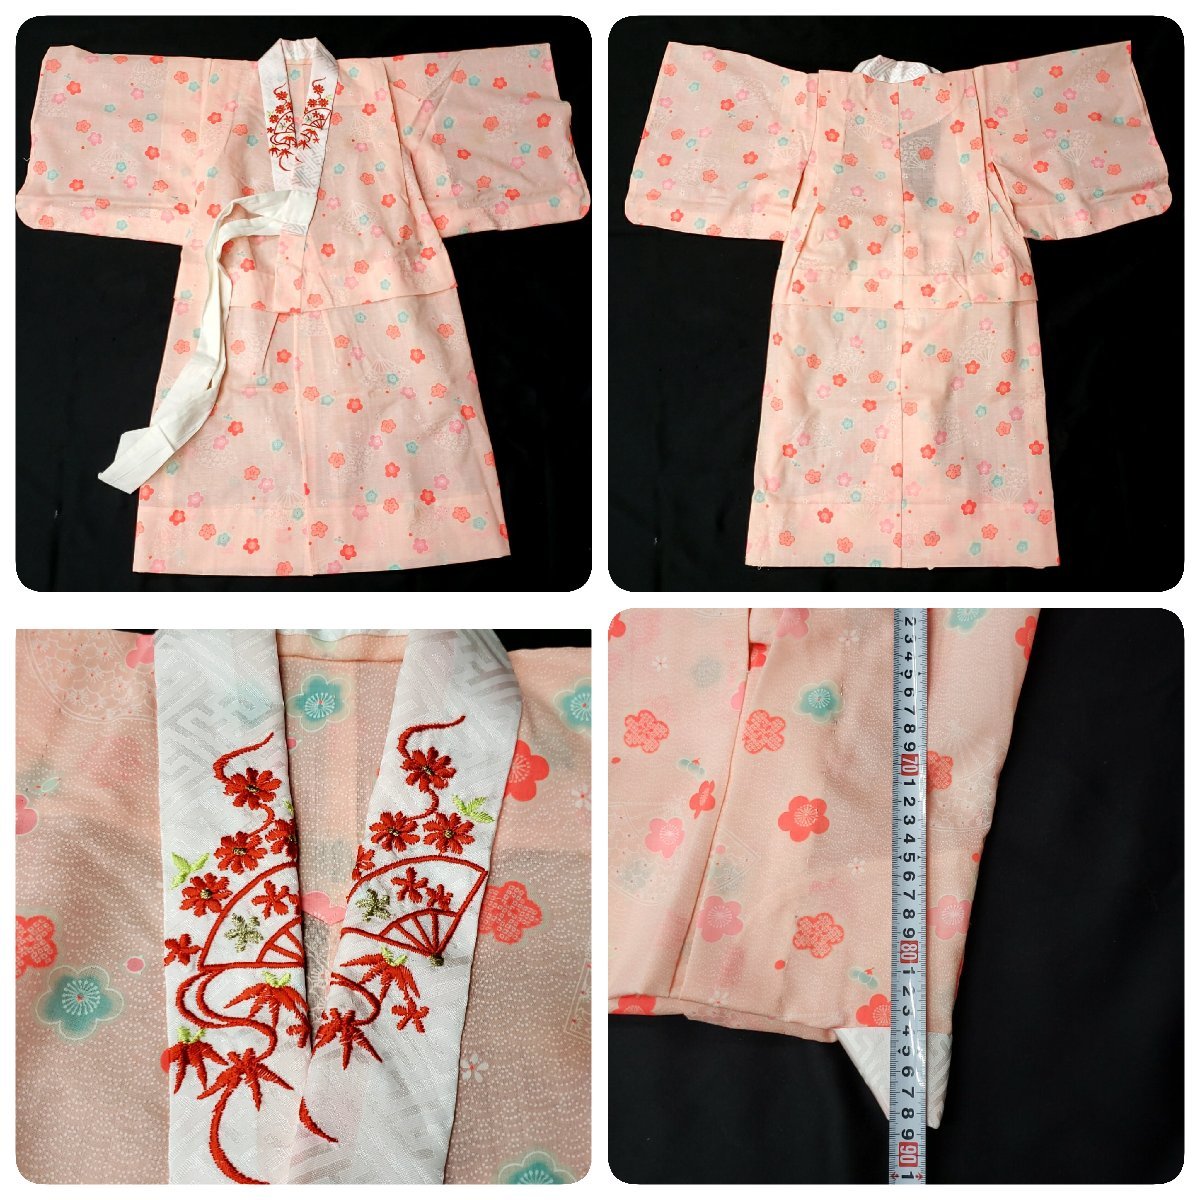  женщина . кимоно кимоно японский костюм "Семь, пять, три" длина 115cm. ткань пальто длинное нижнее кимоно вышивка есть Новый год праздник надеты ежегодные мероприятия девочка костюм [120n262]